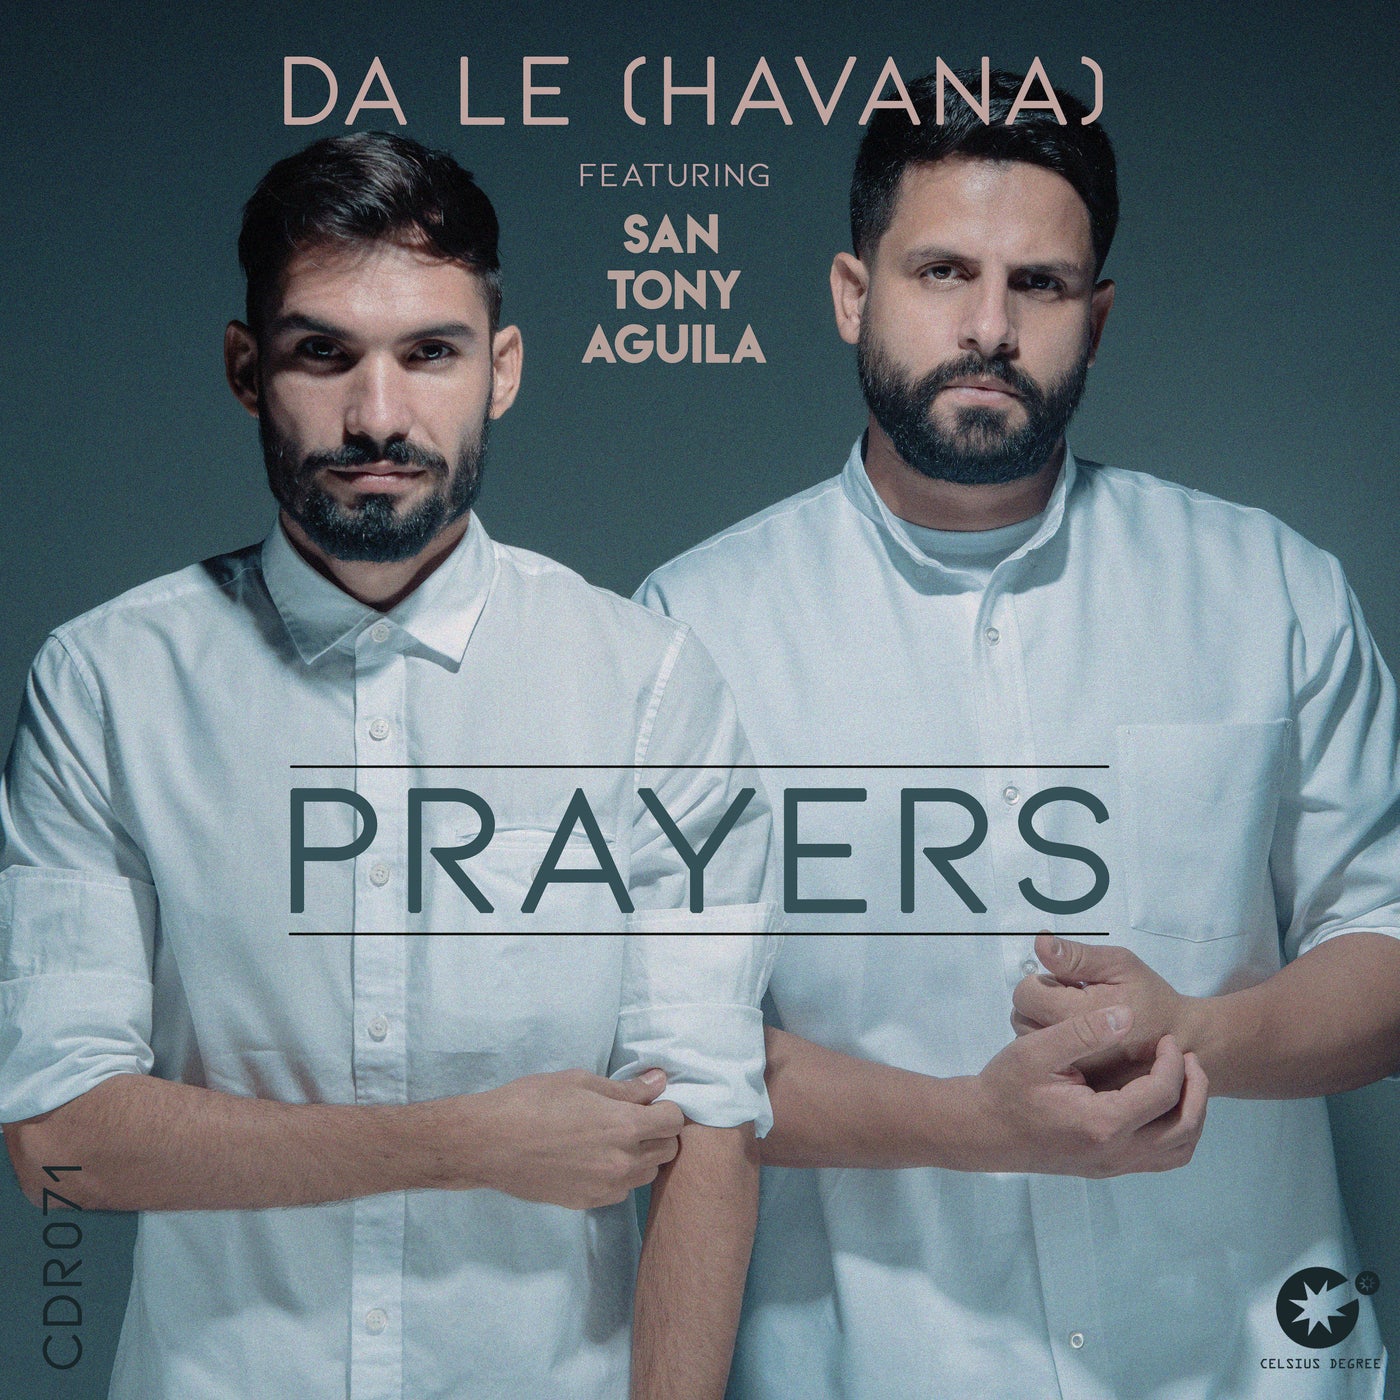 Da Le (Havana), San Tony Aguila - Prayers